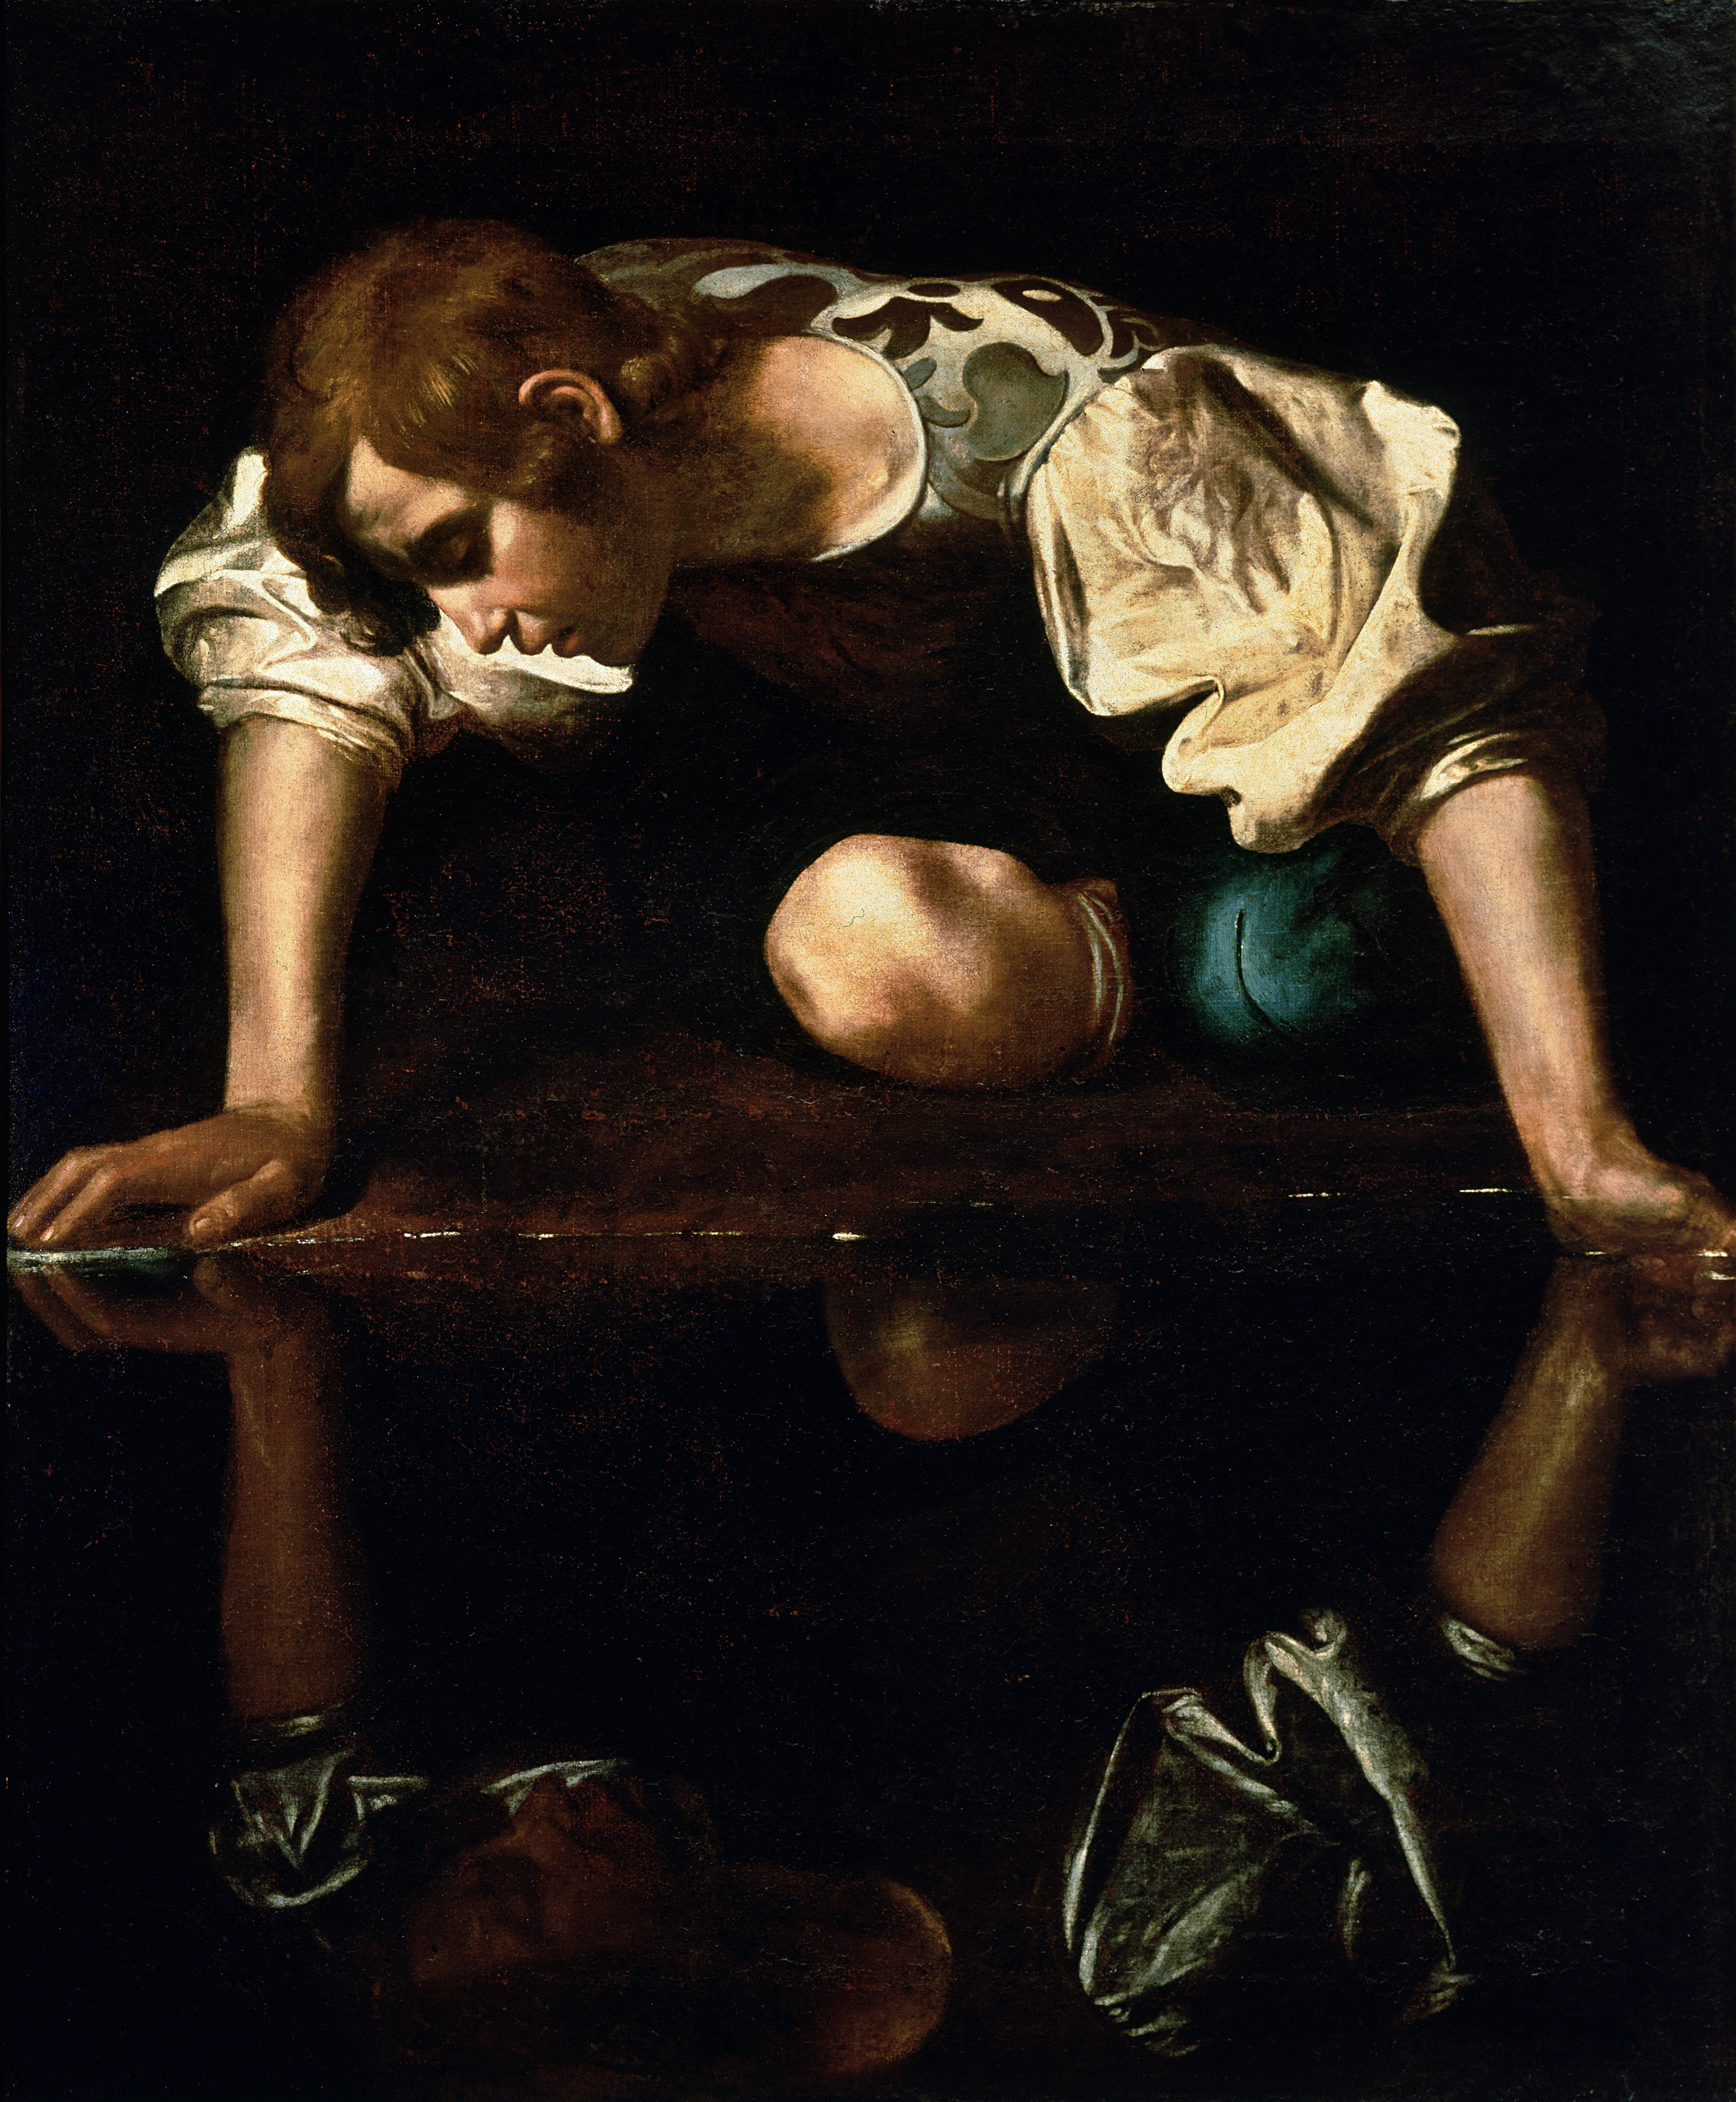 Narciso, Por Caravaggio, 1594-1596. Galeria Nacional de Arte Antiga